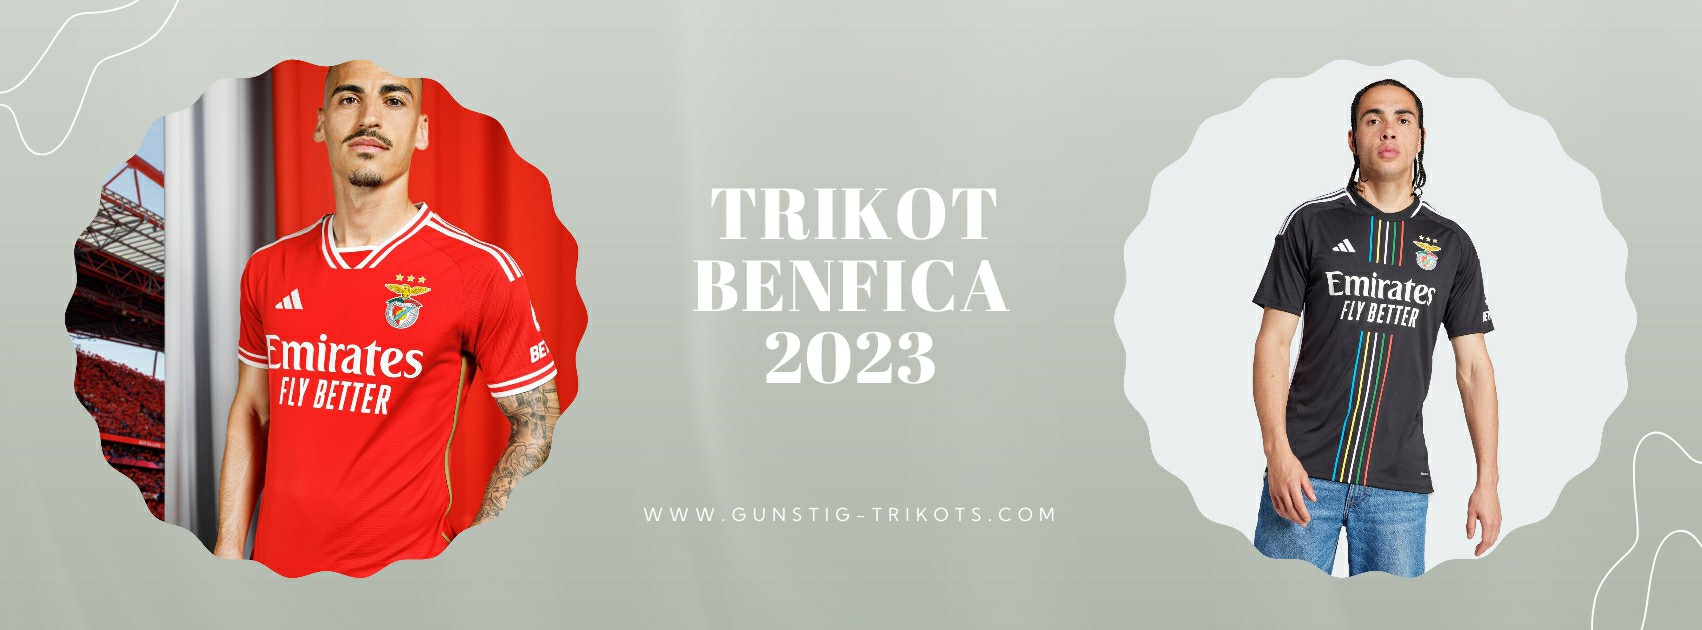 Benfica Trikot 2023-2024